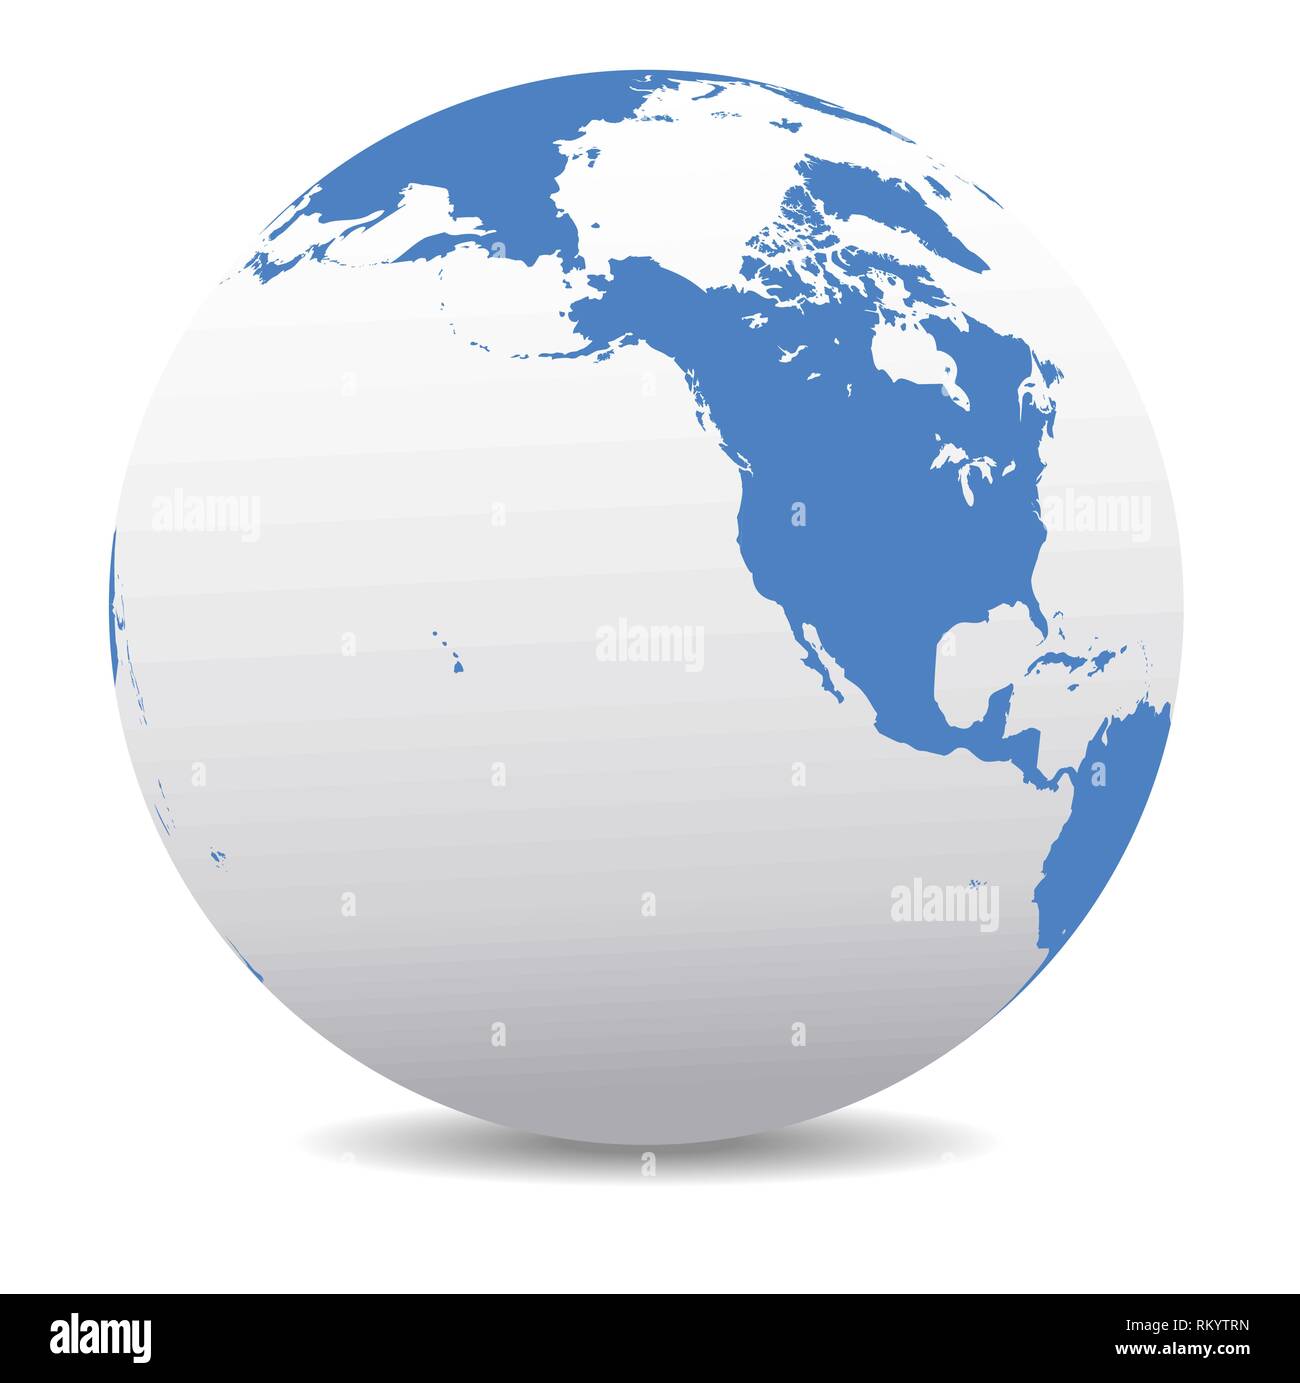 Amérique du Nord, Canada, de la Sibérie et l'Alaska monde global, carte vectorielle de l'icône du globe terrestre, la côte occidentale de l'Amérique latine Illustration de Vecteur